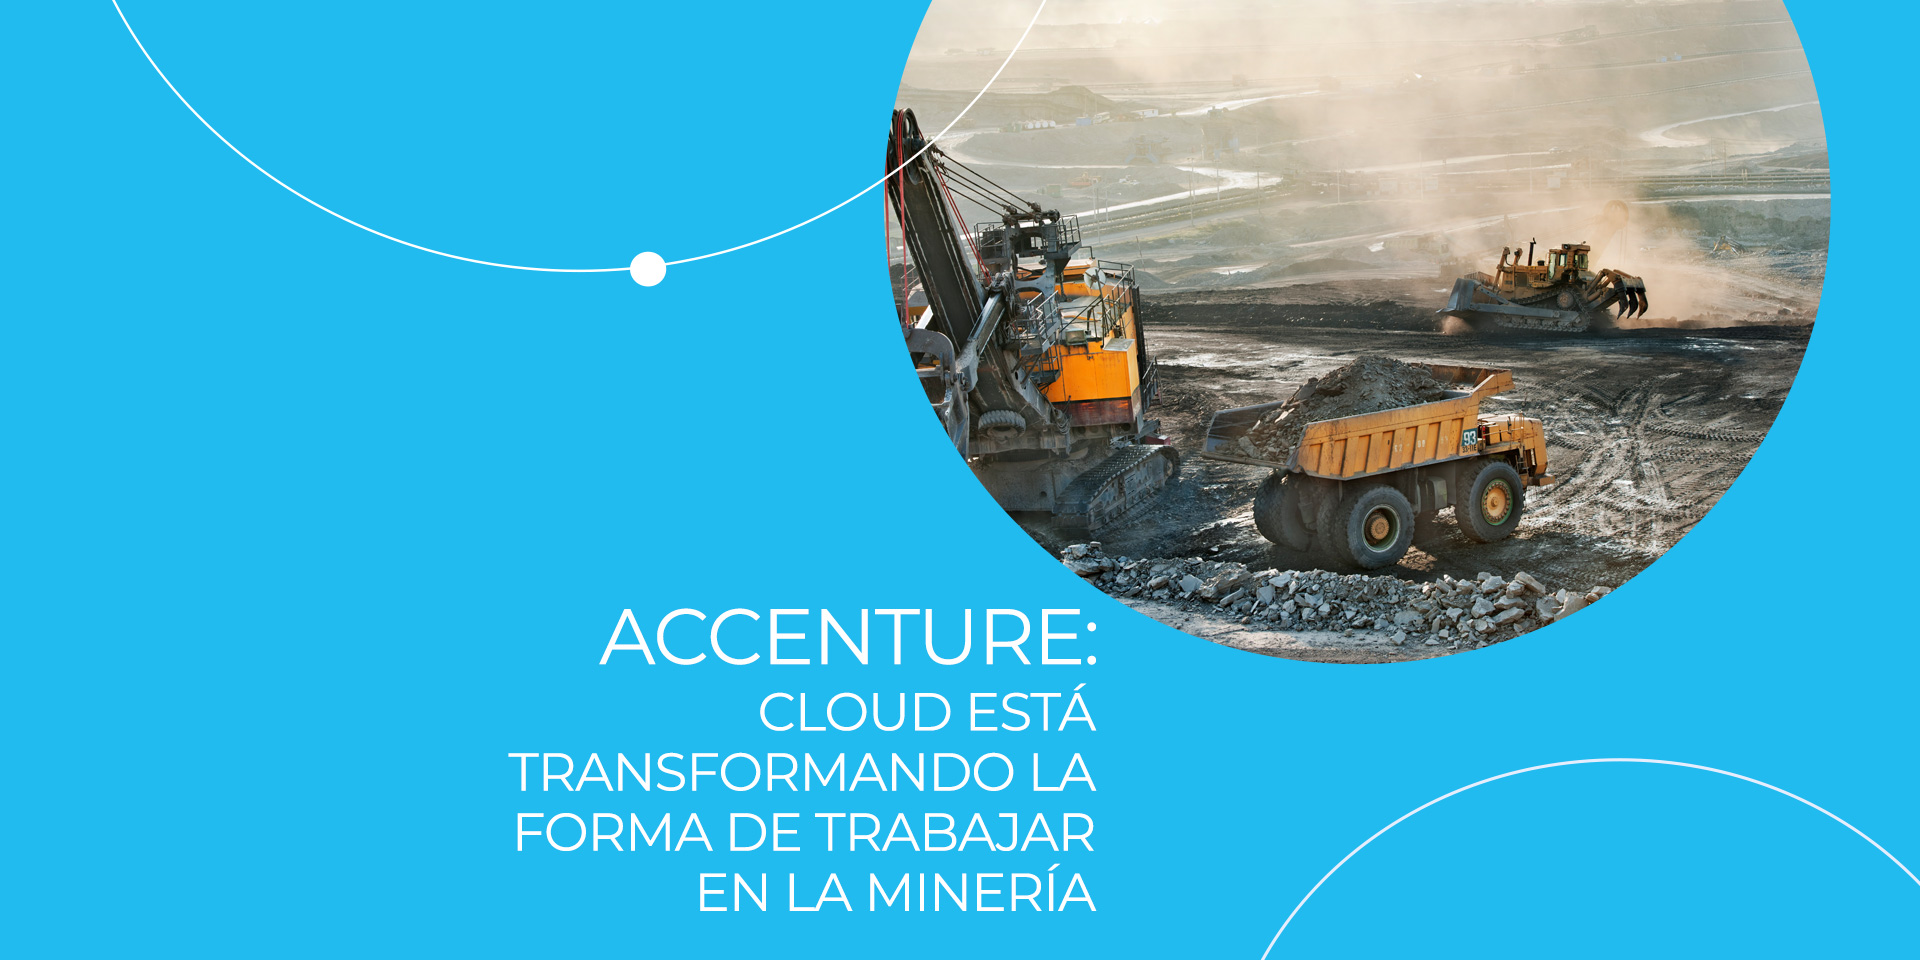 Accenture: Cloud está transformando la forma de trabajar en la minería